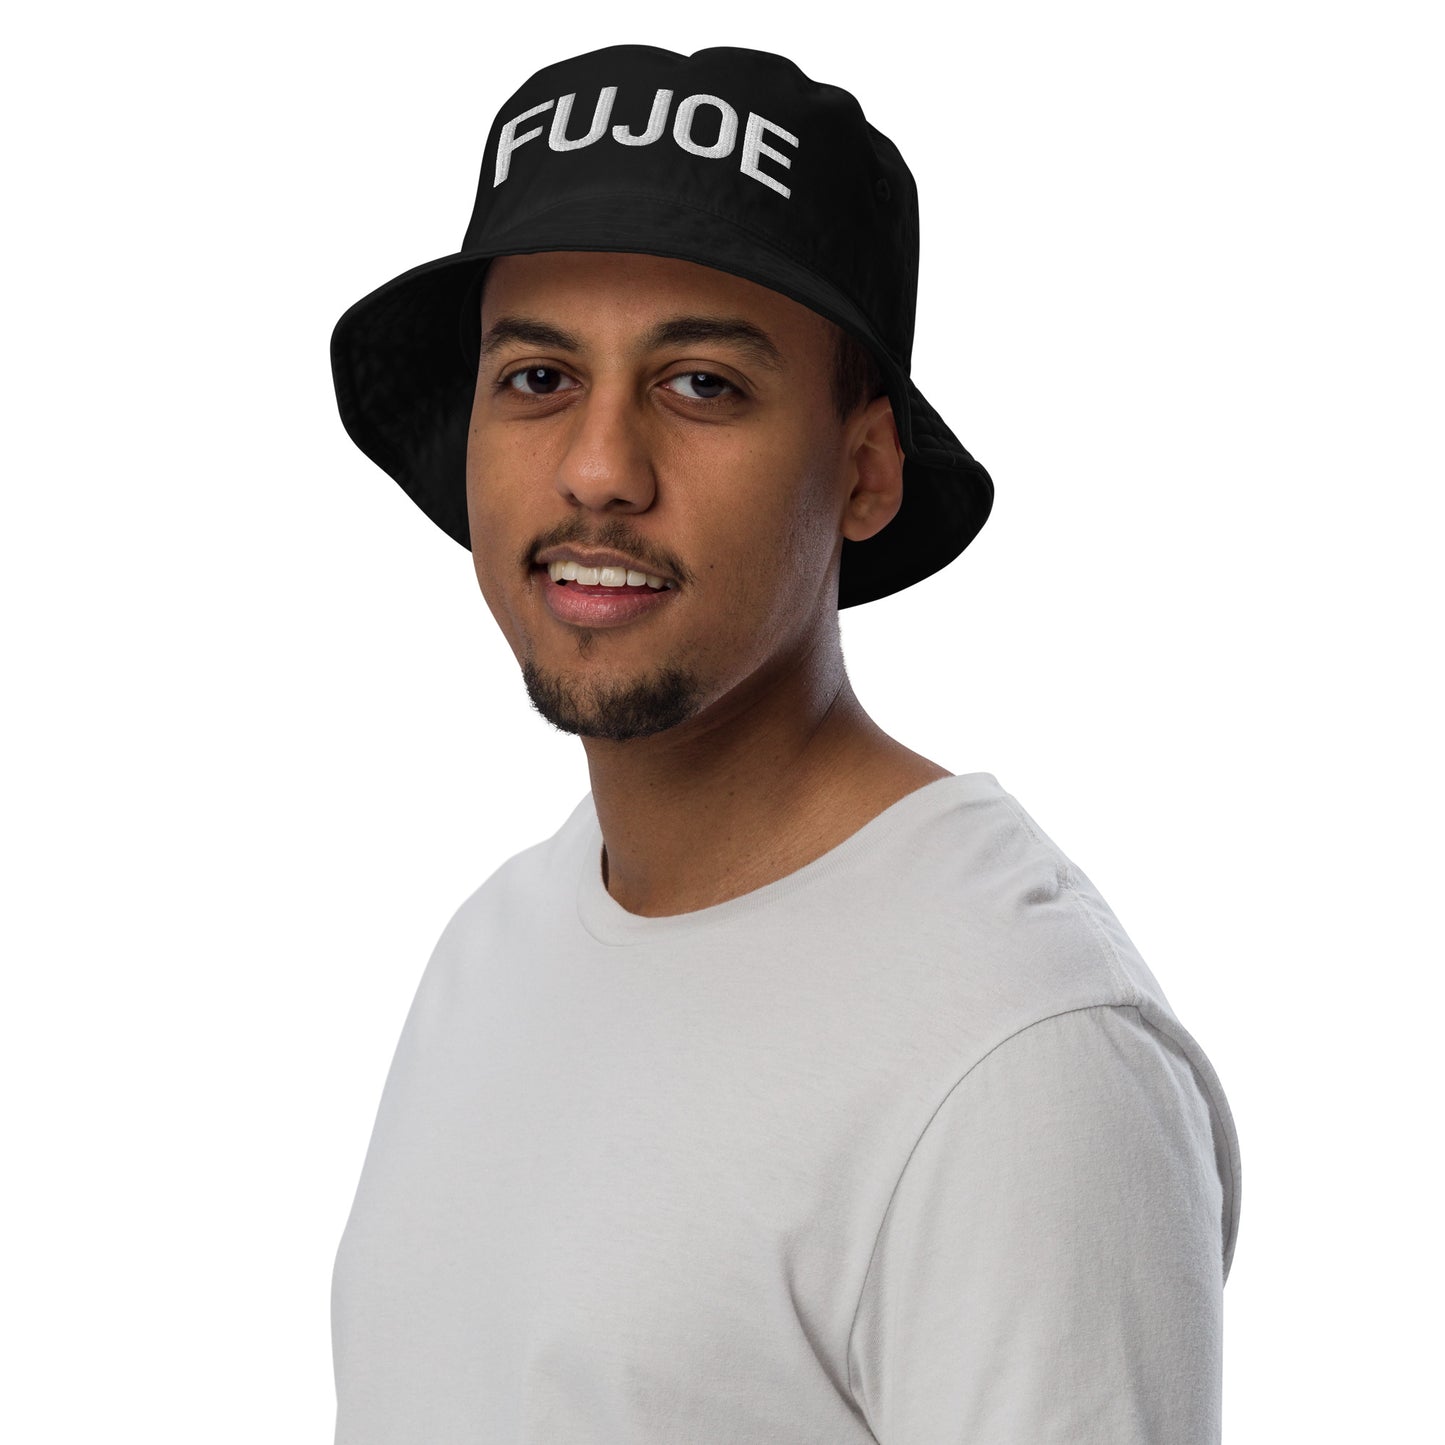 Fujoe hat / Fujoe Organic bucket hat